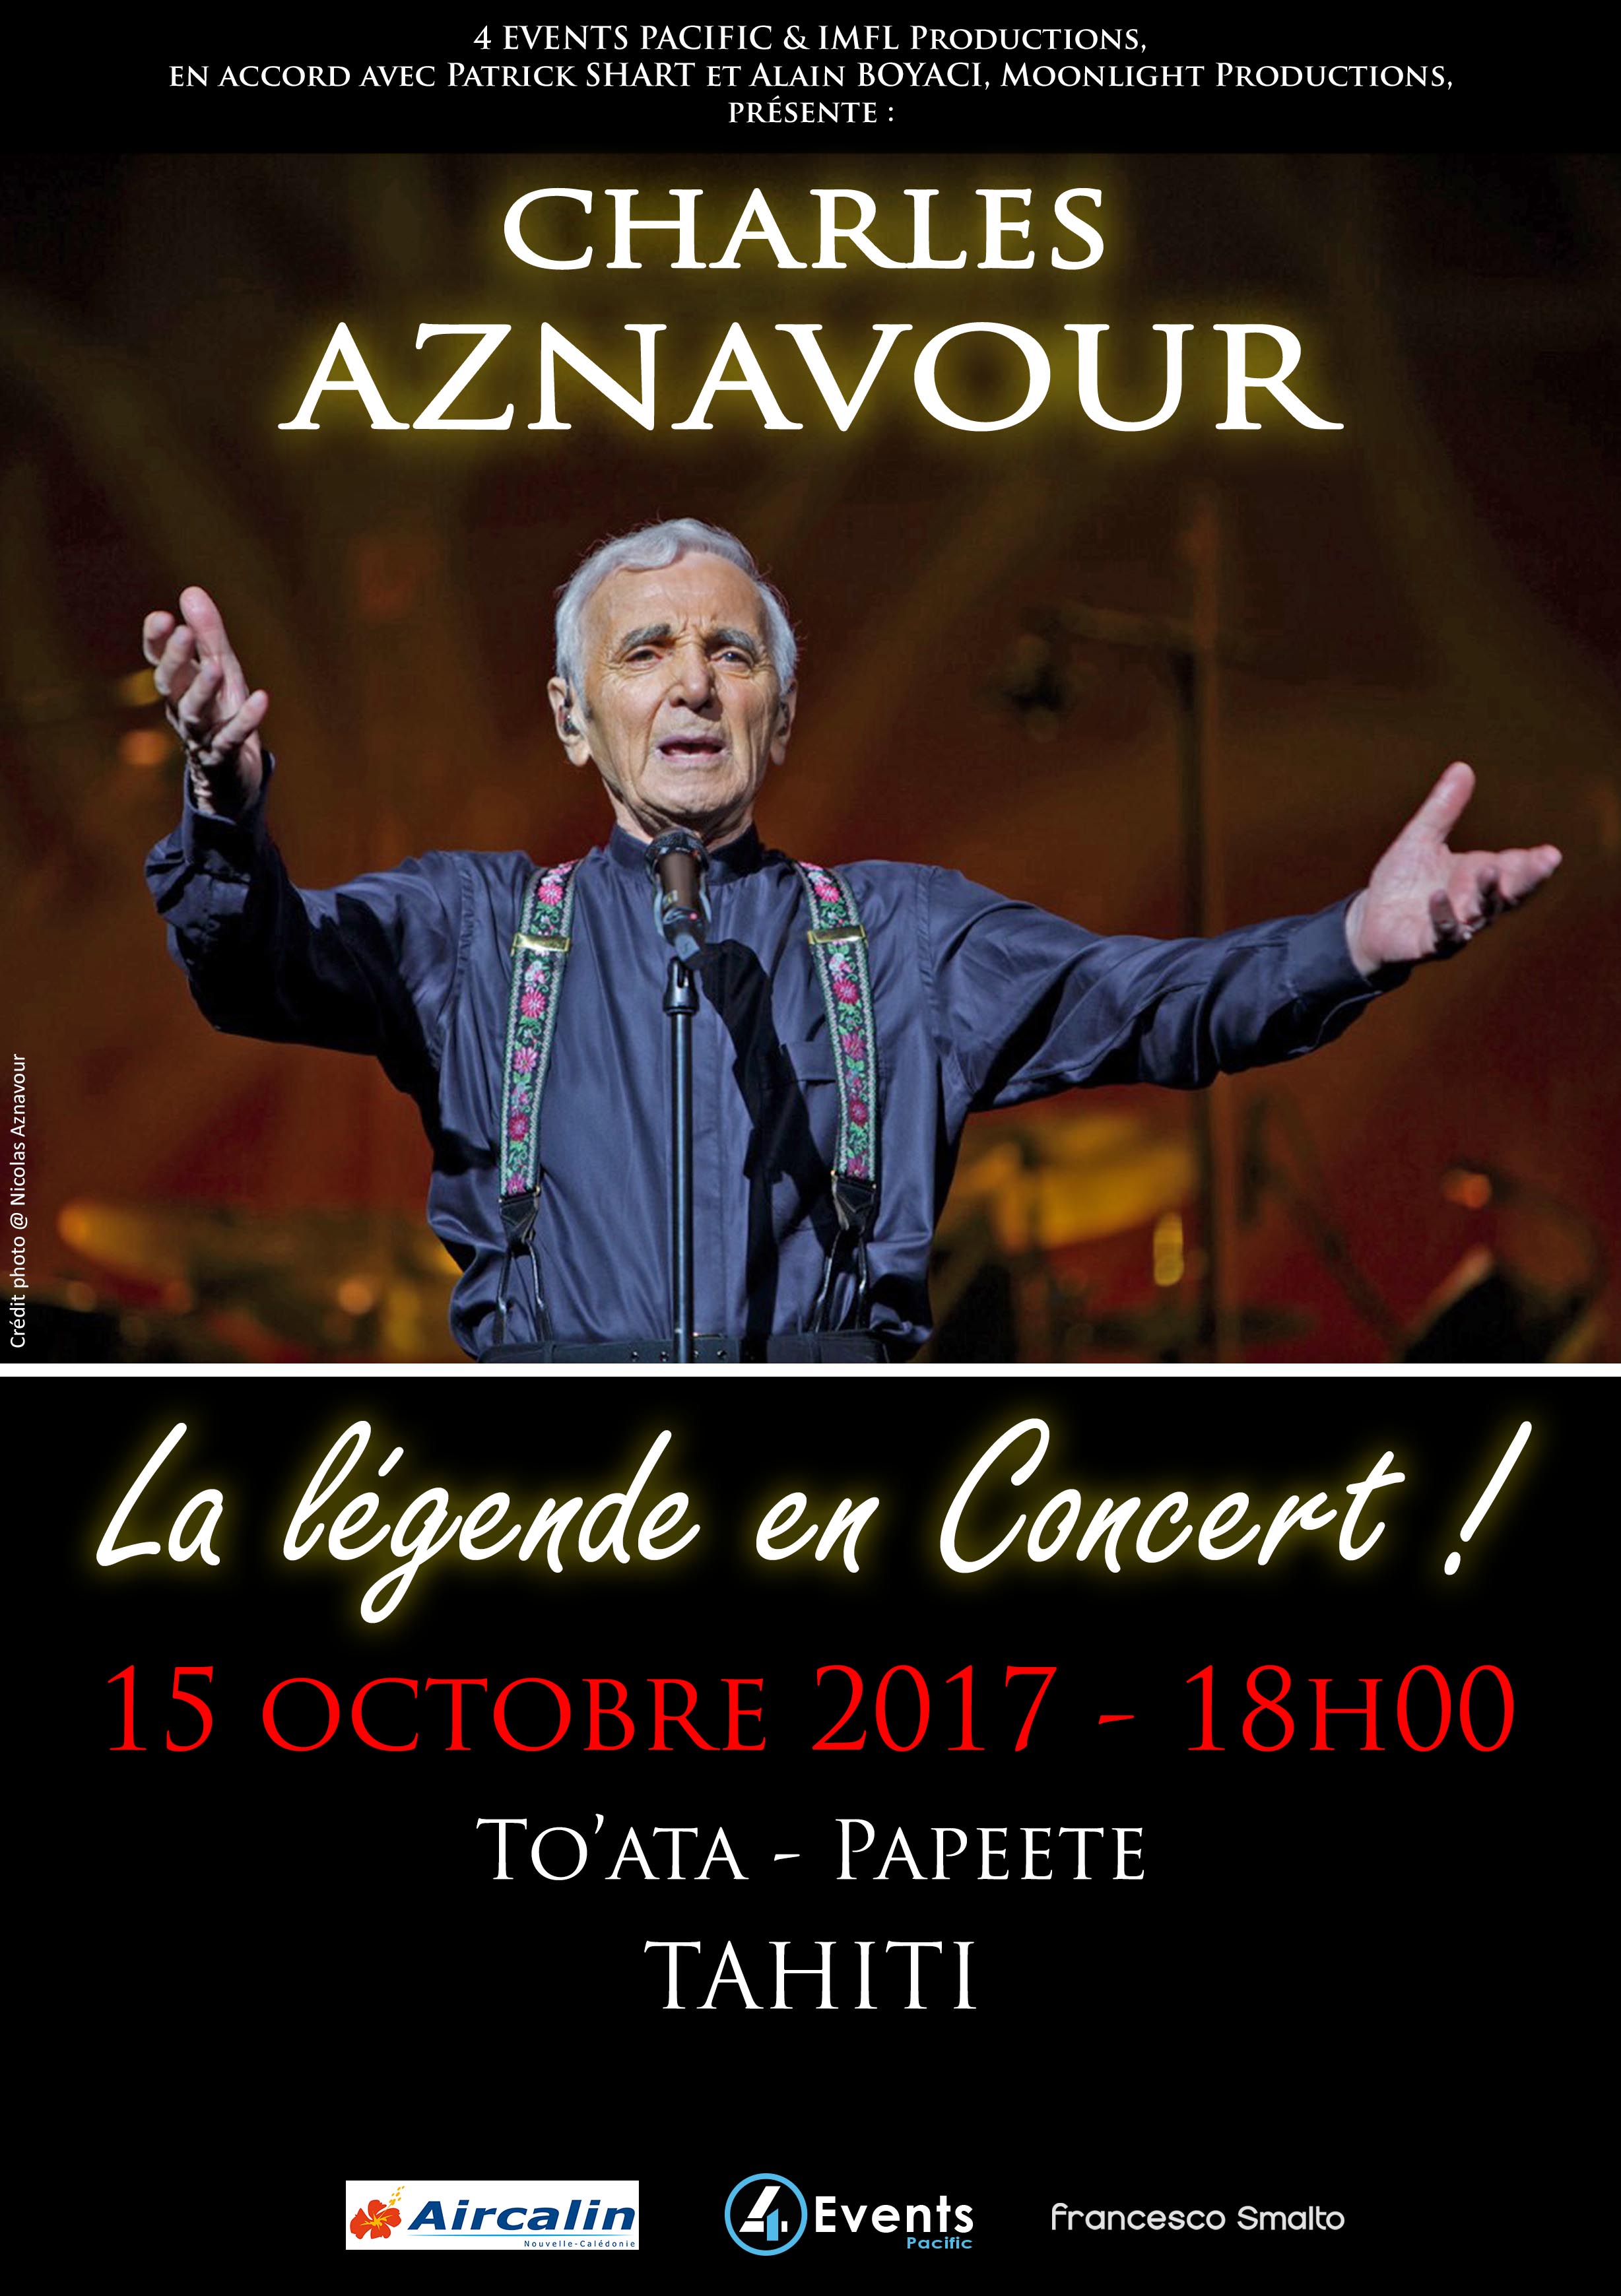 Charles Aznavour, en concert le 15 octobre à Tahiti